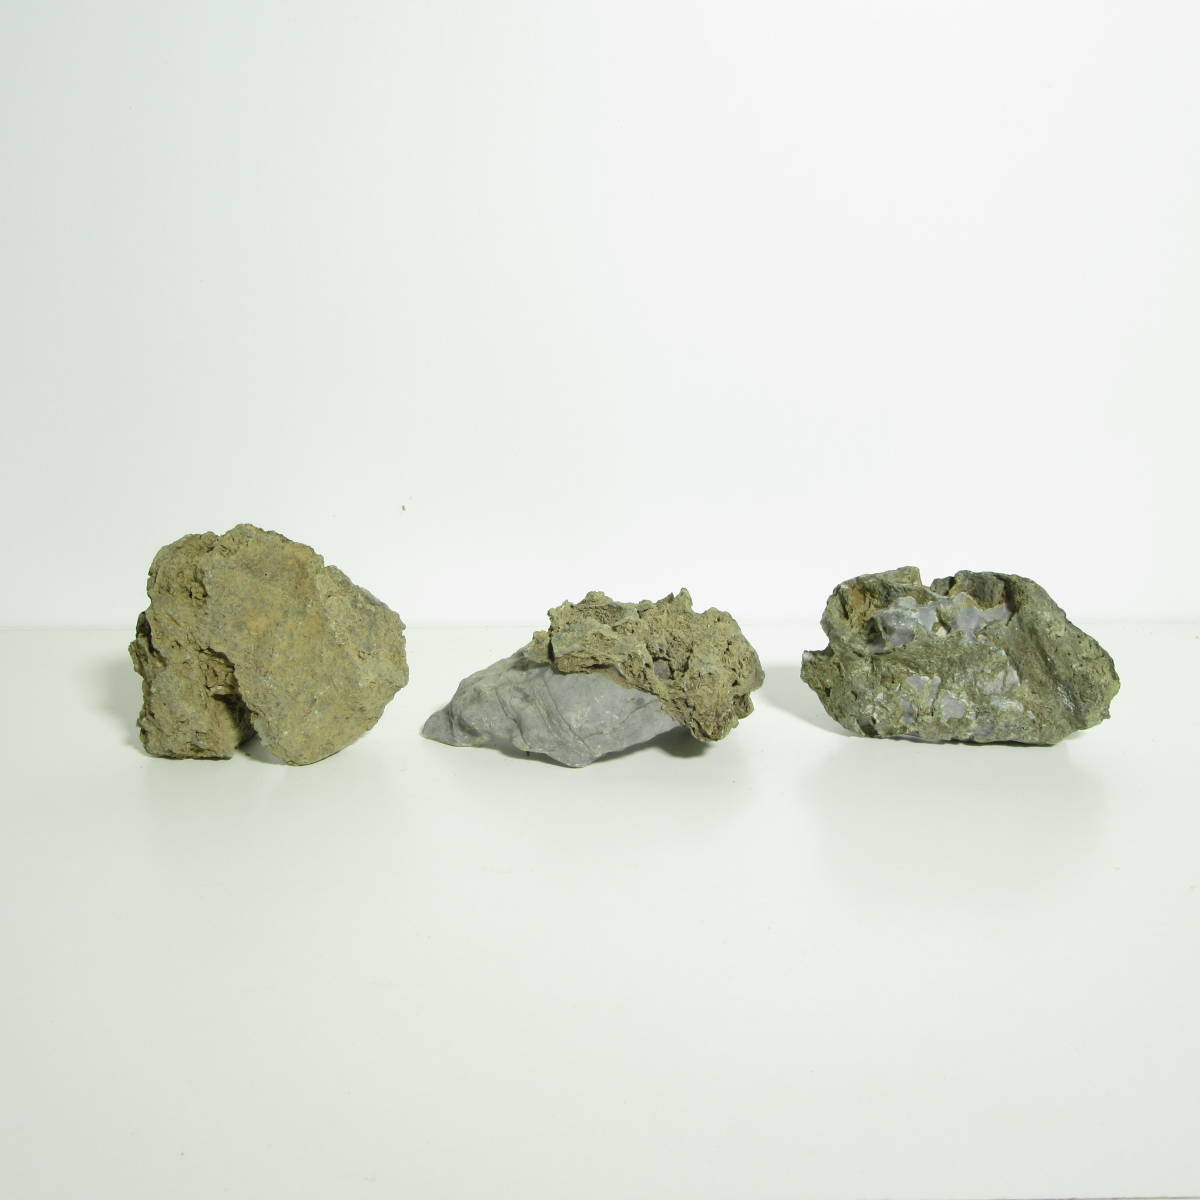 [ бонсай сопутствующие товары * камень ][. дерево камень 3 шт. комплект! ]SI-1/ установка камень . камень оценка камень / бонсай .... бонсай луговые и горные травы надеты сырой Ran koke террариум .!